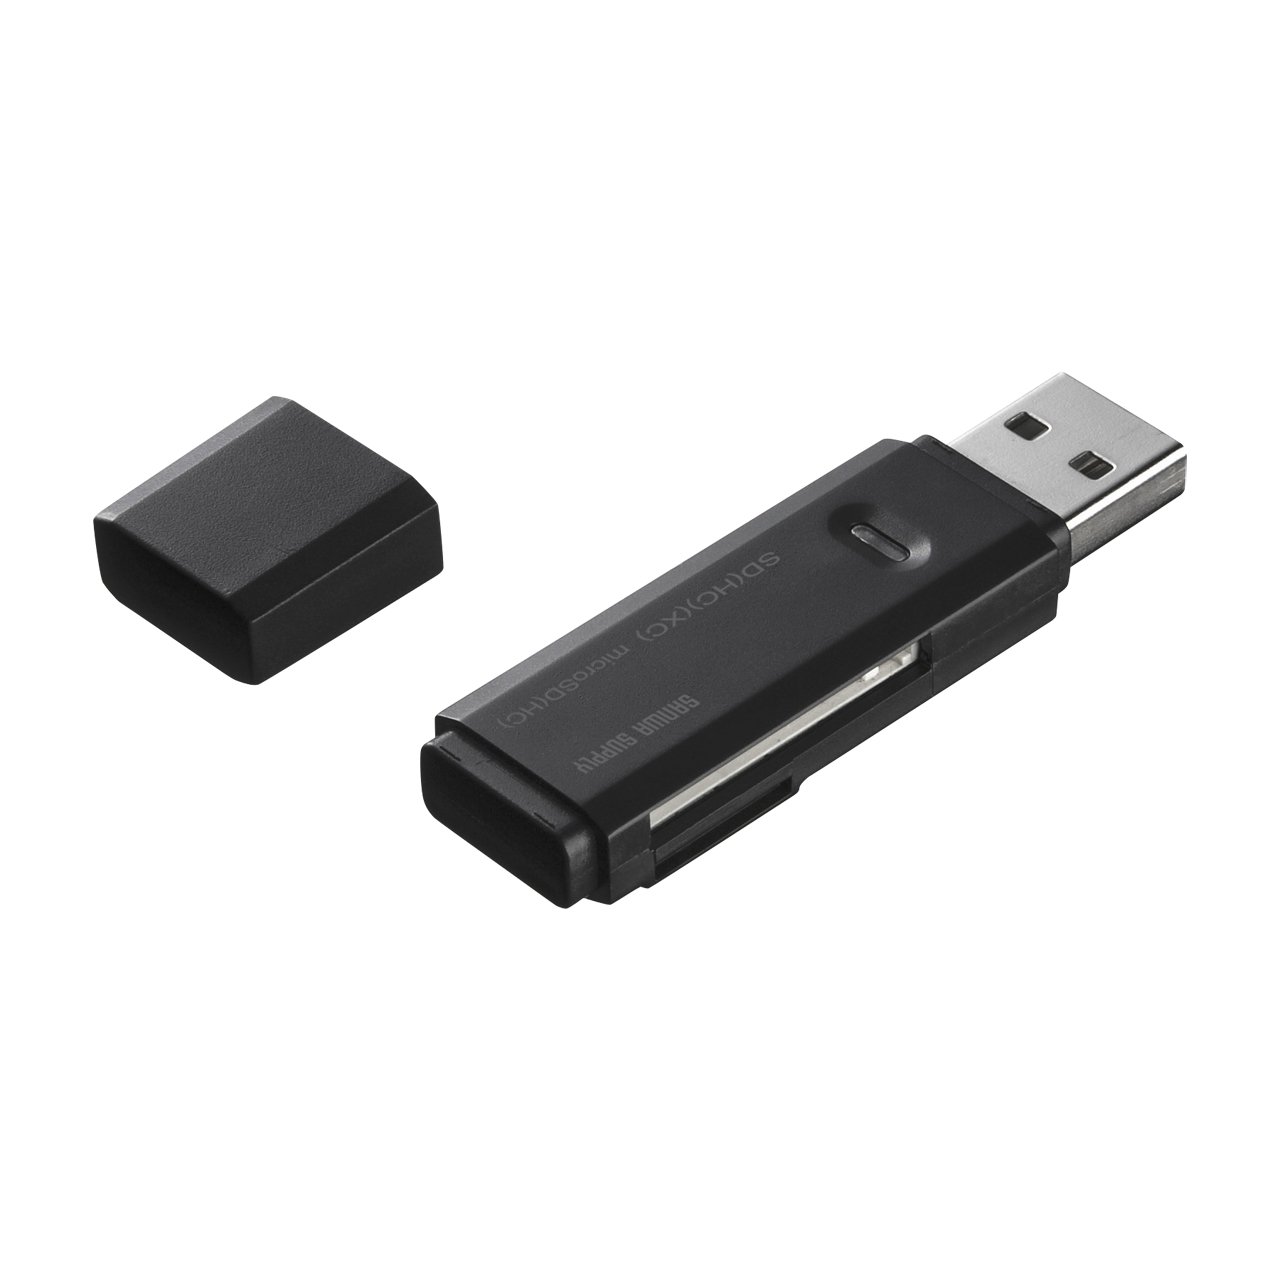 サンワサプライ USB2.0 カードリーダー(SDメモリーカード/ microSDカードスロット搭載) ブラック ADR-MSDU2BK